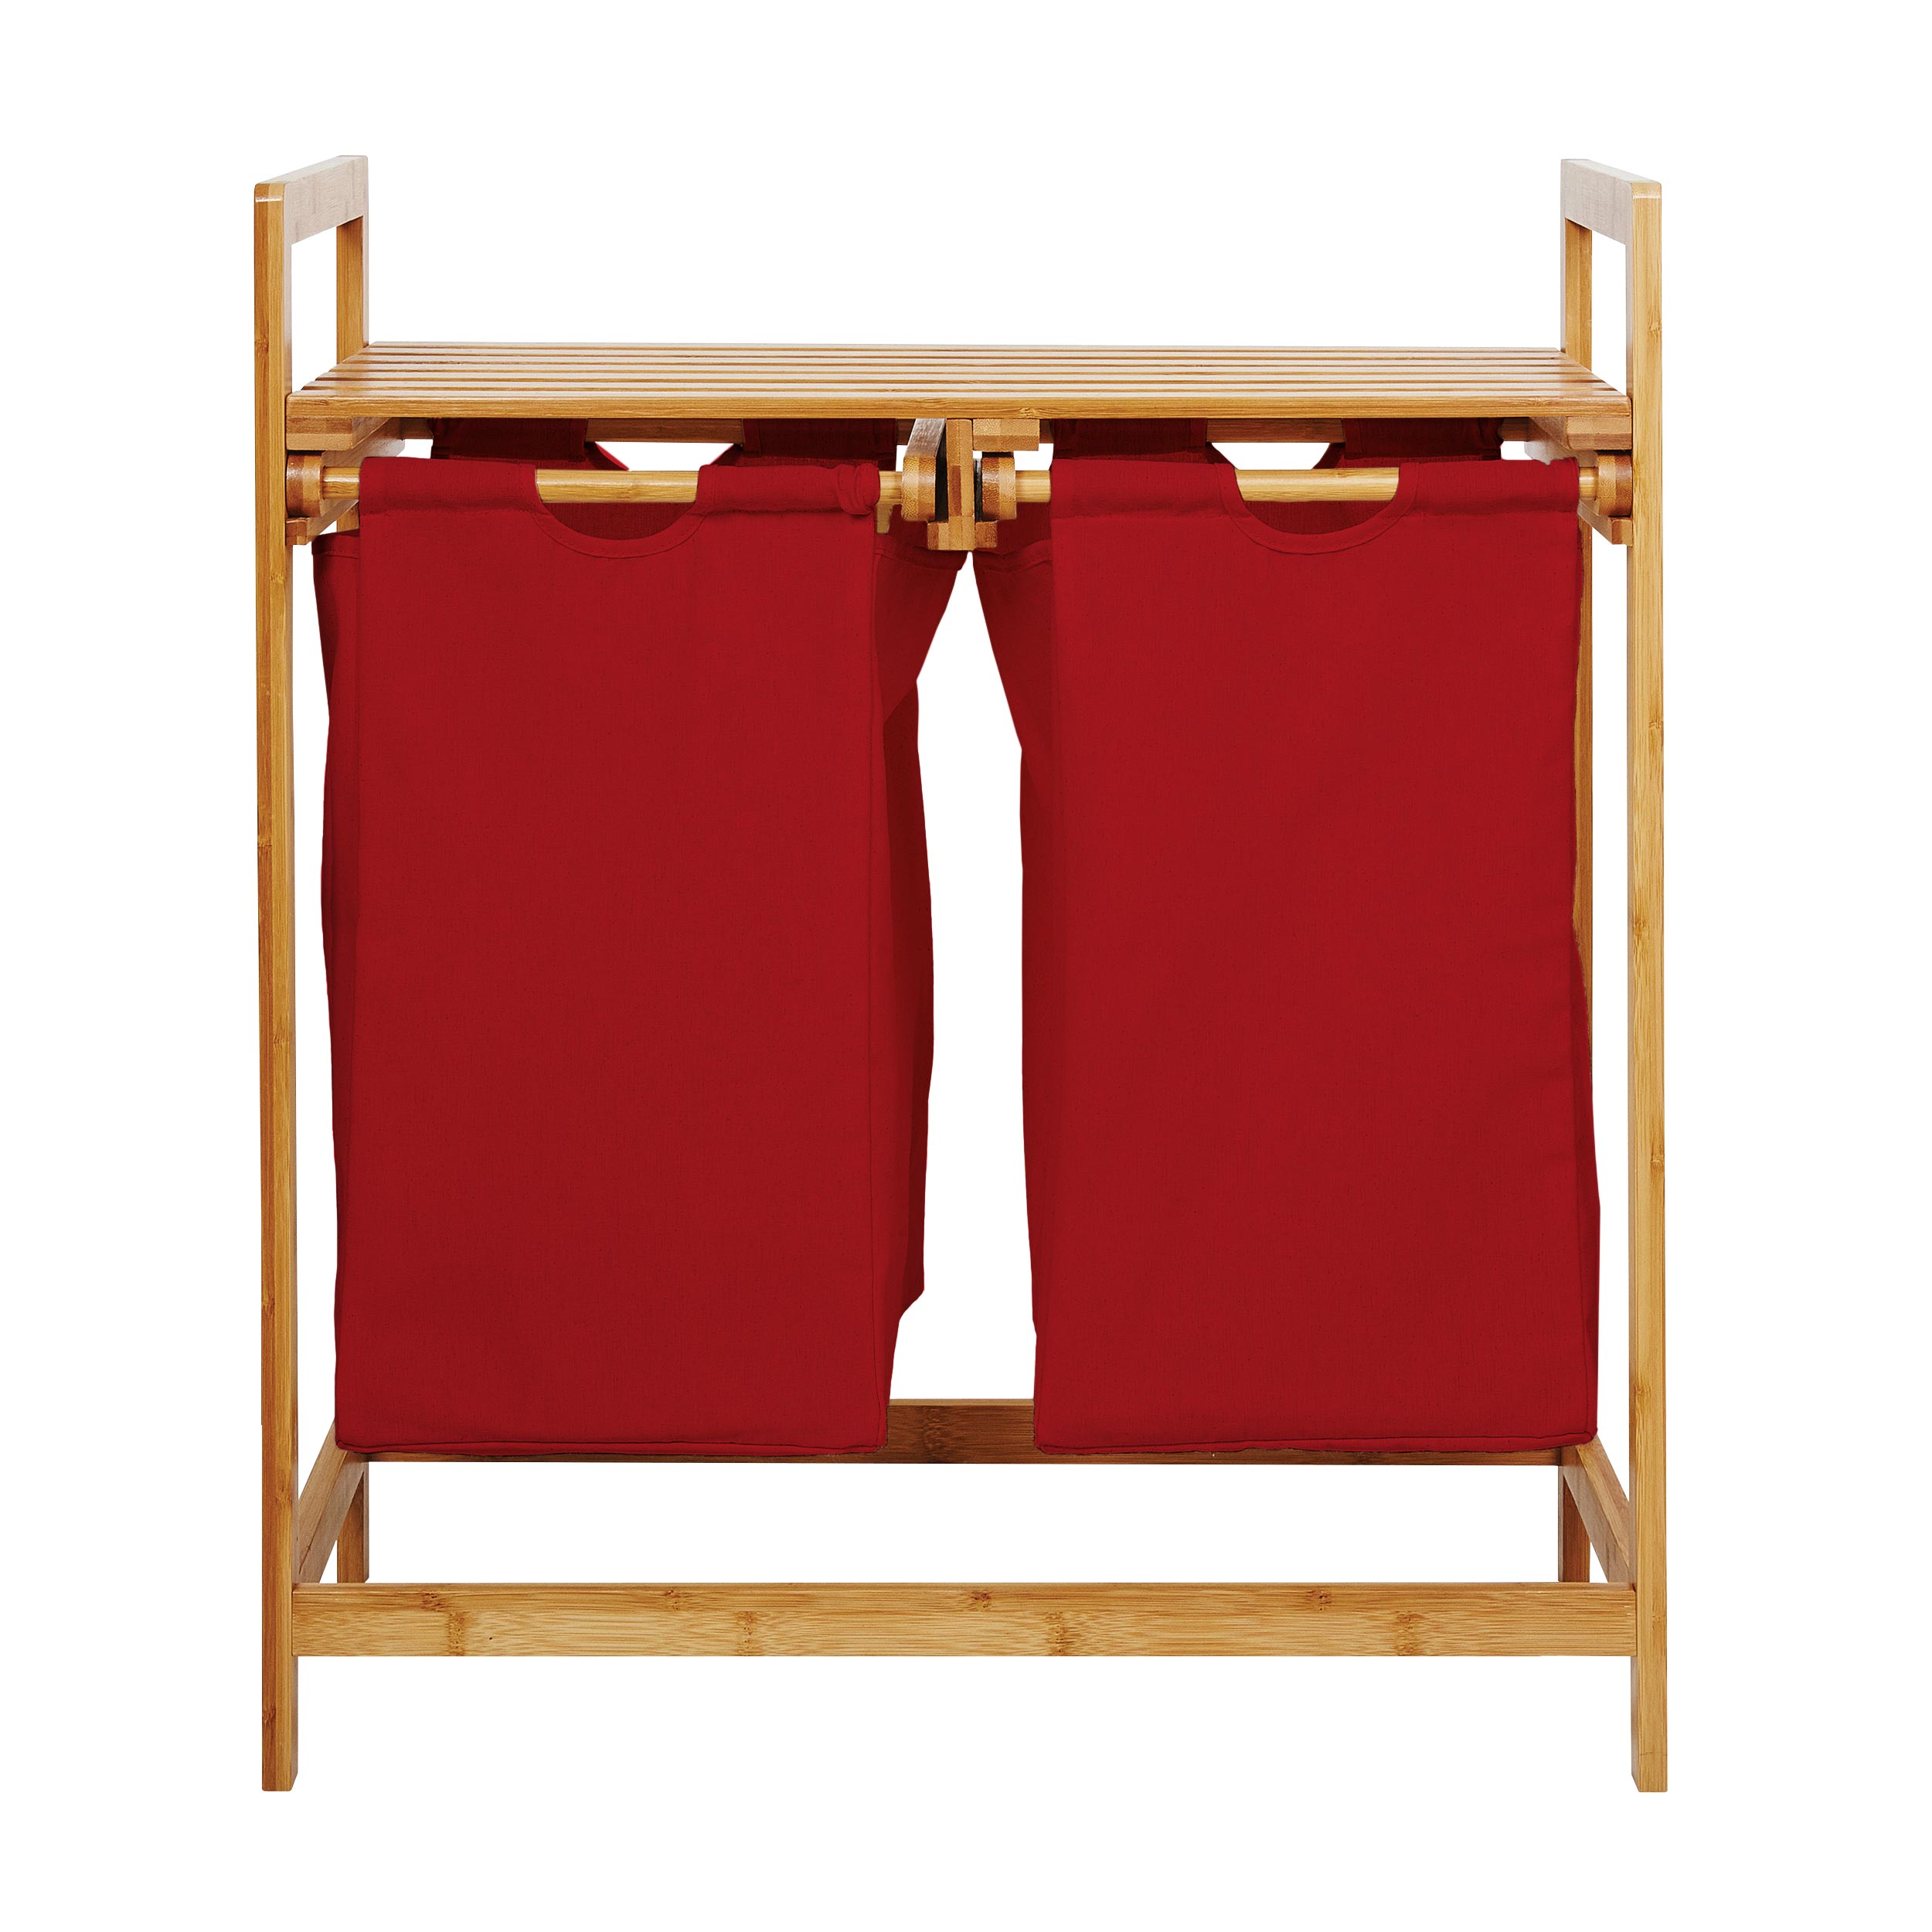 Bambus Wäschekorb mit 2 ausziehbaren Wäschesacken - 73 x 64 x 33 cm - Rot